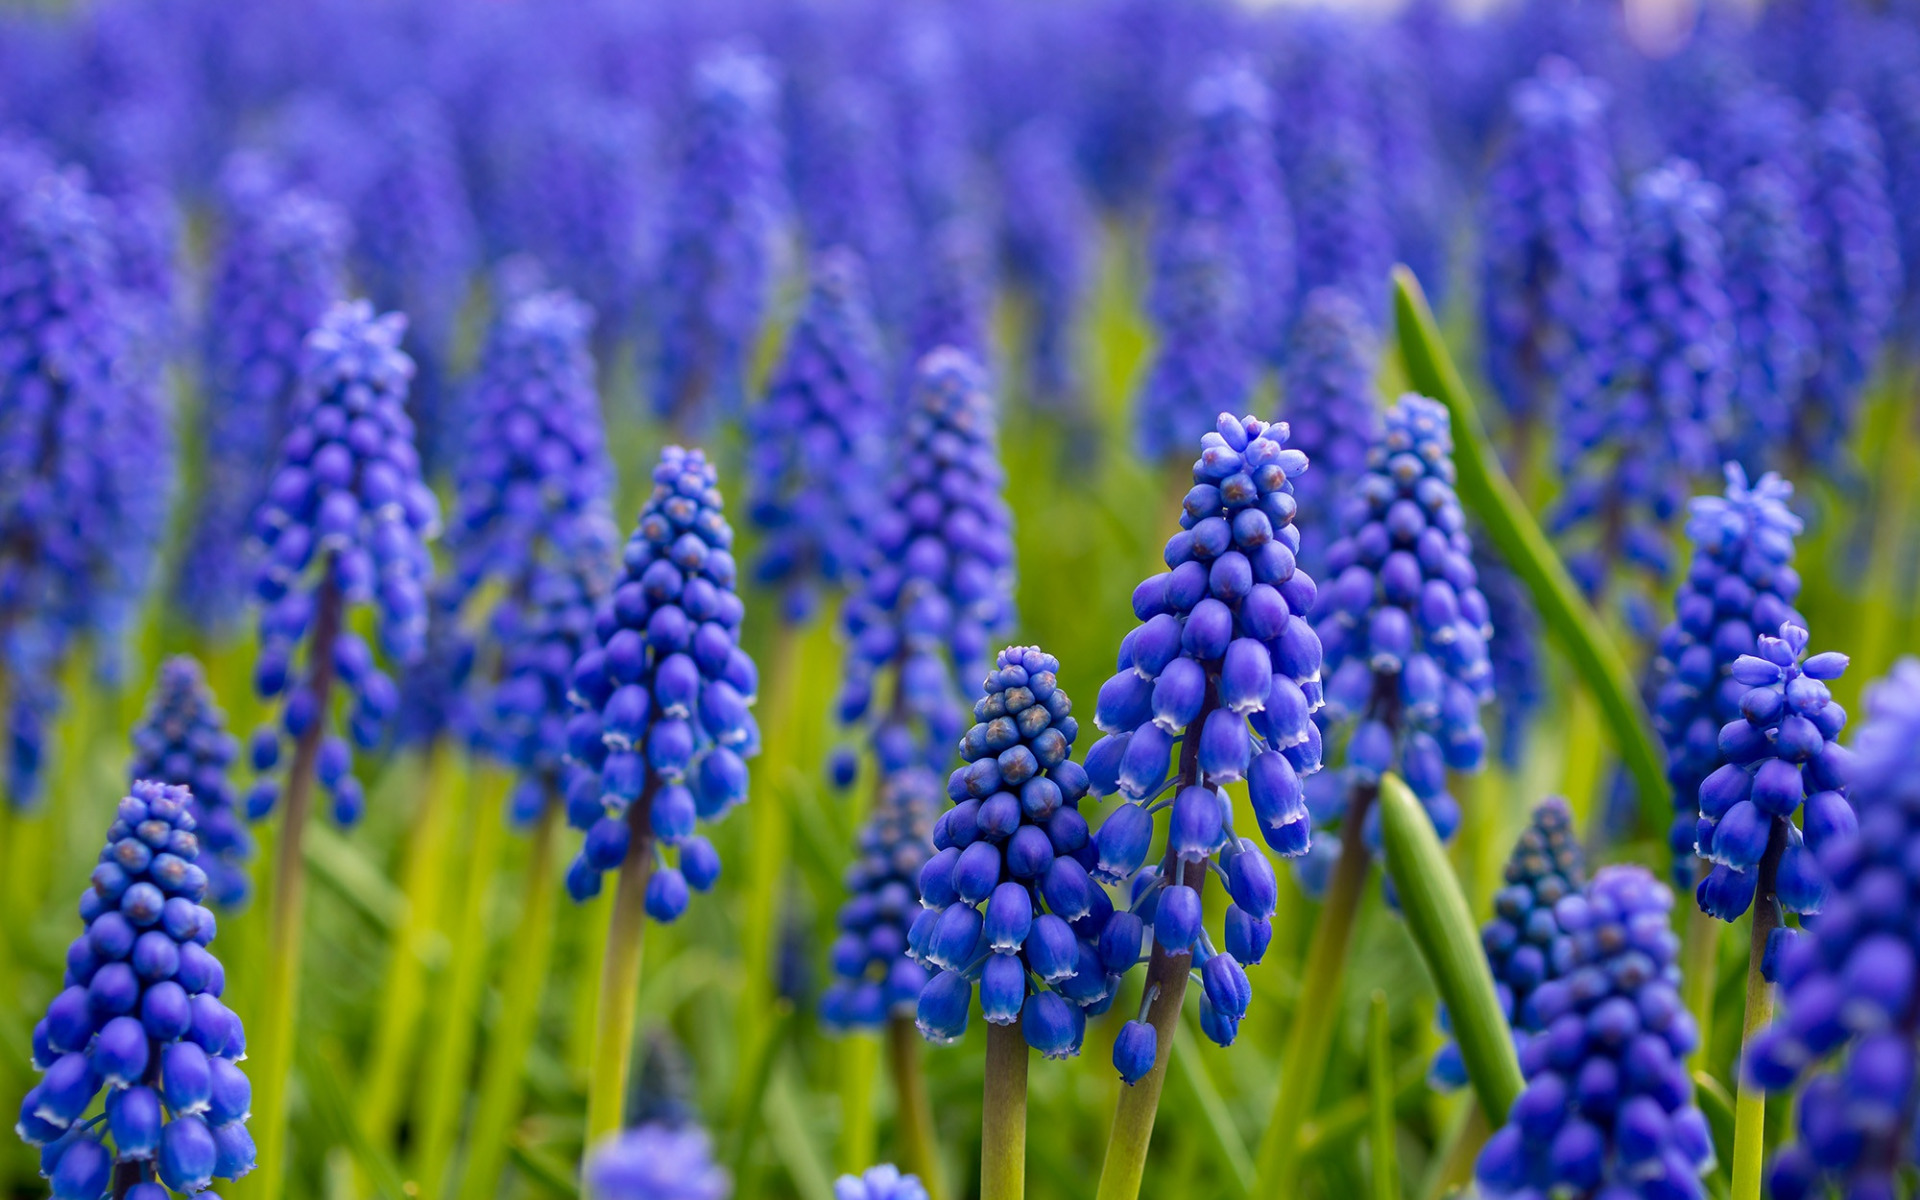 Download wallpapers hyacinth, purple wildflowers, purple spring flowers ...